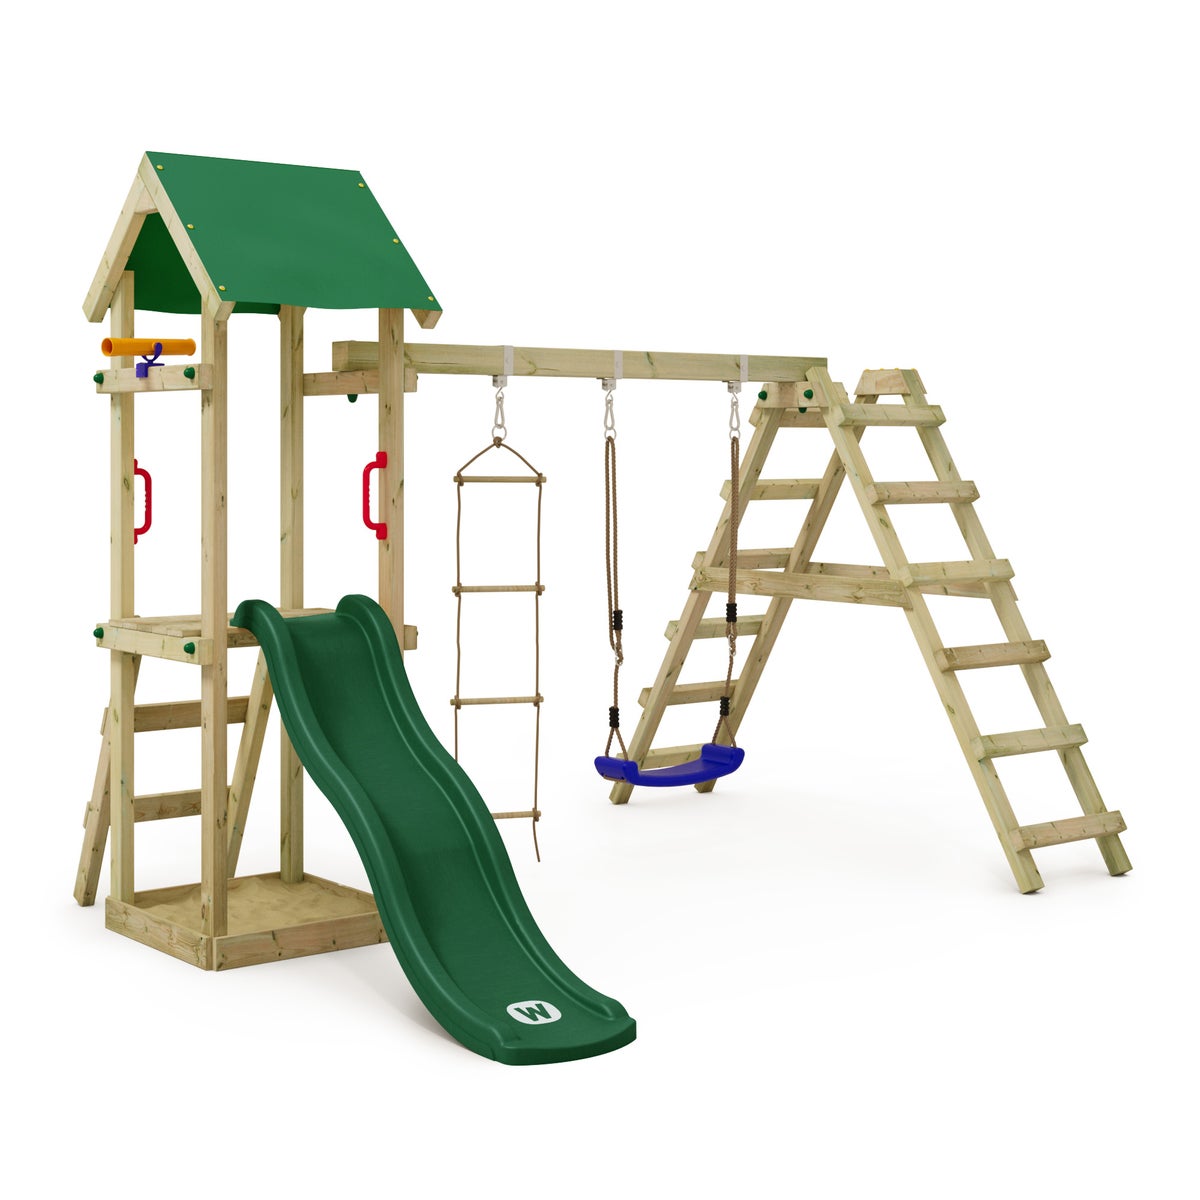 WICKEY Spielturm Klettergerüst TinyLoft mit Schaukel und Rutsche, Kletterturm mit Sandkasten, Leiter und Spiel-Zubehör - grün